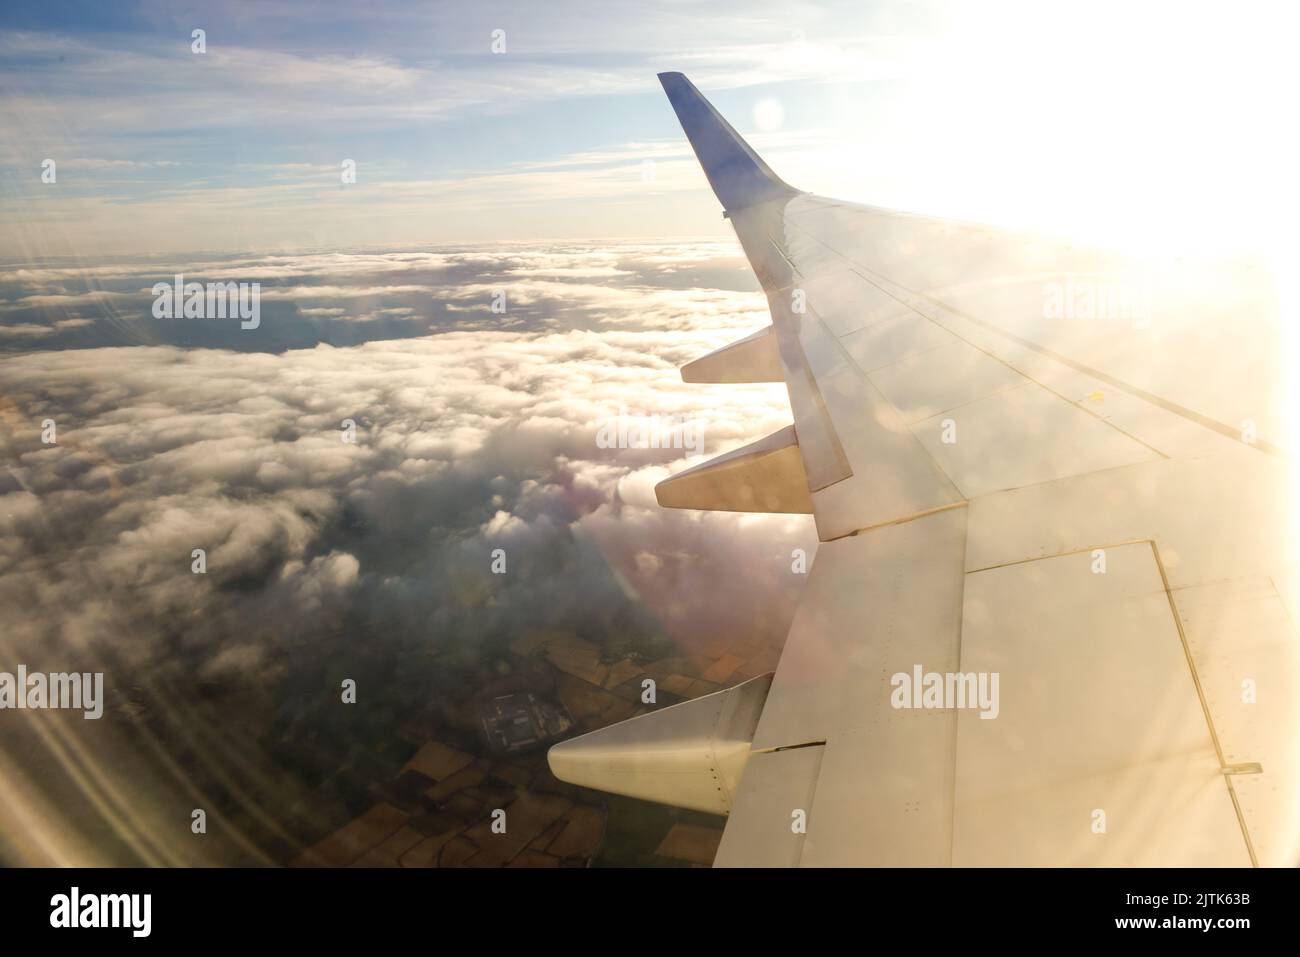 Vista desde una ventana de avión al inicio de un viaje Foto de stock